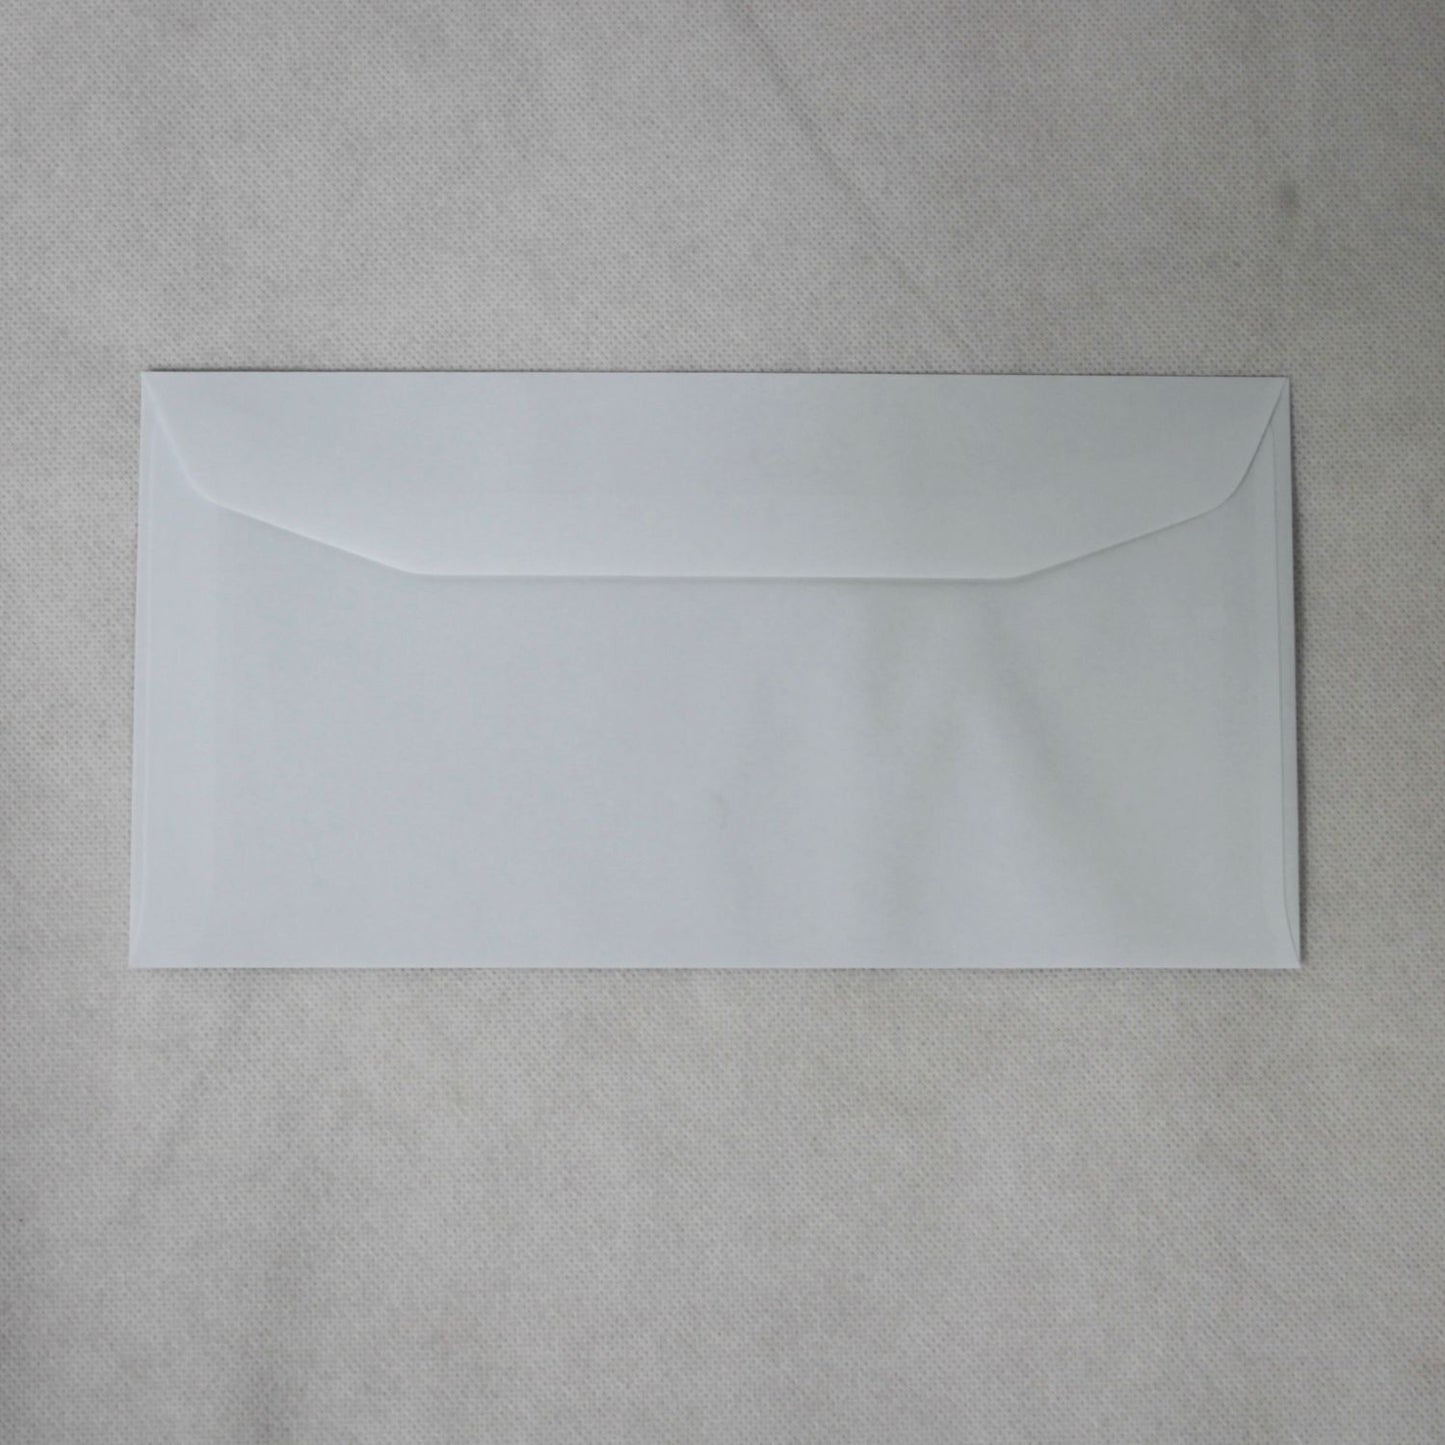 121x235mm DL+ White Gummed Envelopes (Window 45x90mm)